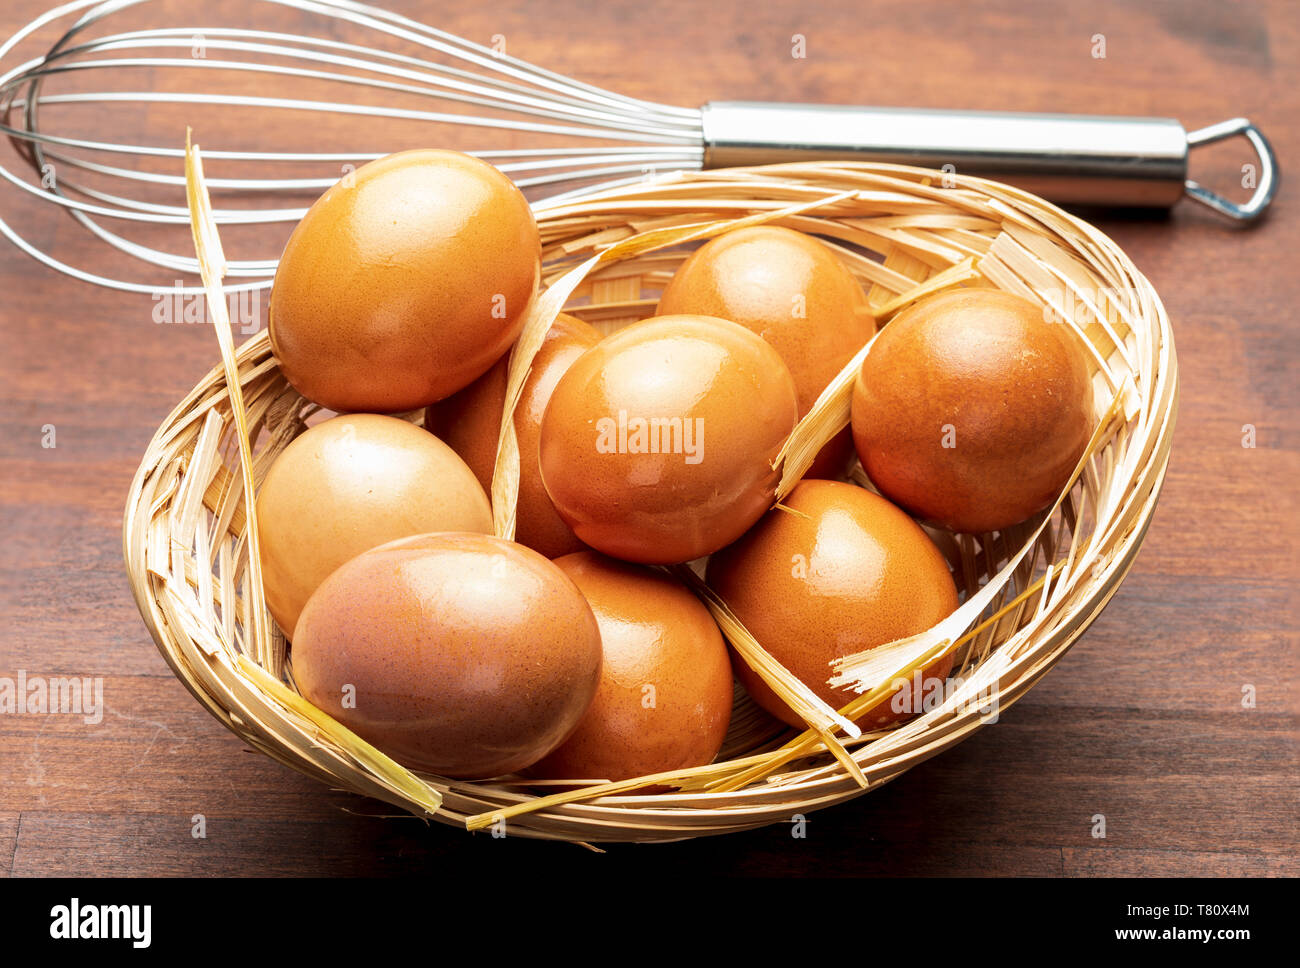 Los huevos frescos y varillas para batir (batidor manual). Batir